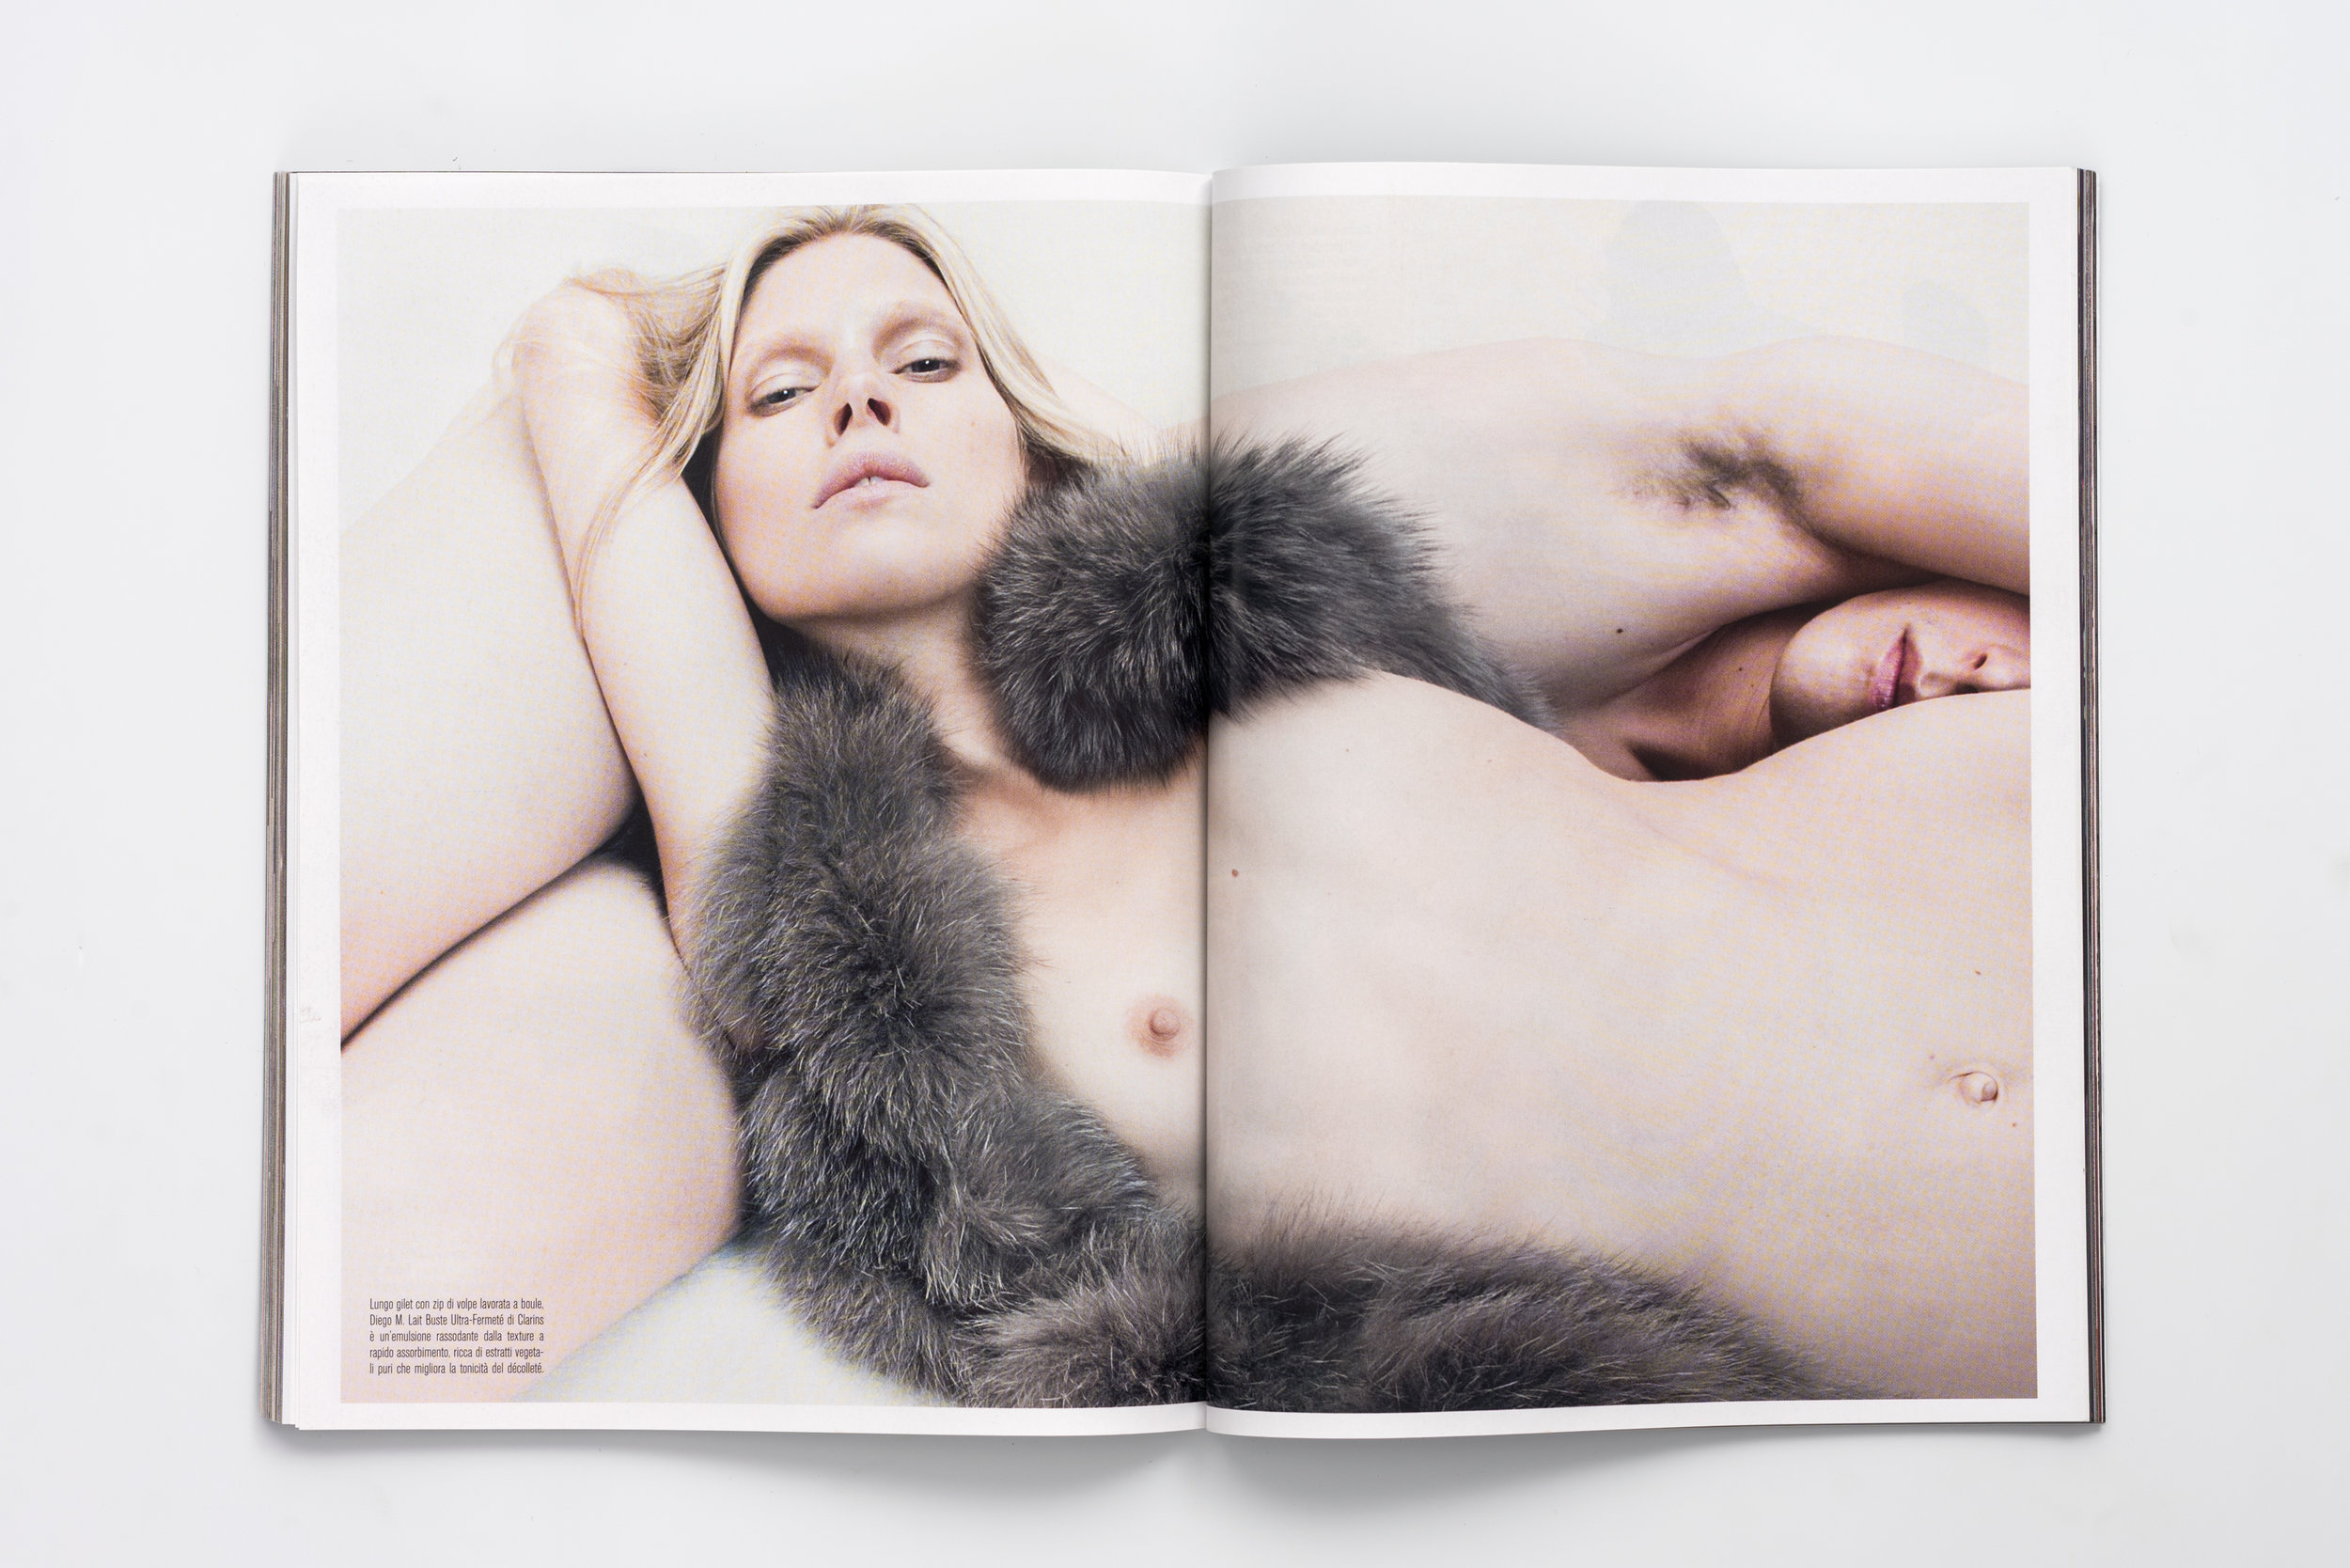 Iselin Steiro_Steven Meisel_Vogue Italia_Venus in Furs_3.jpg